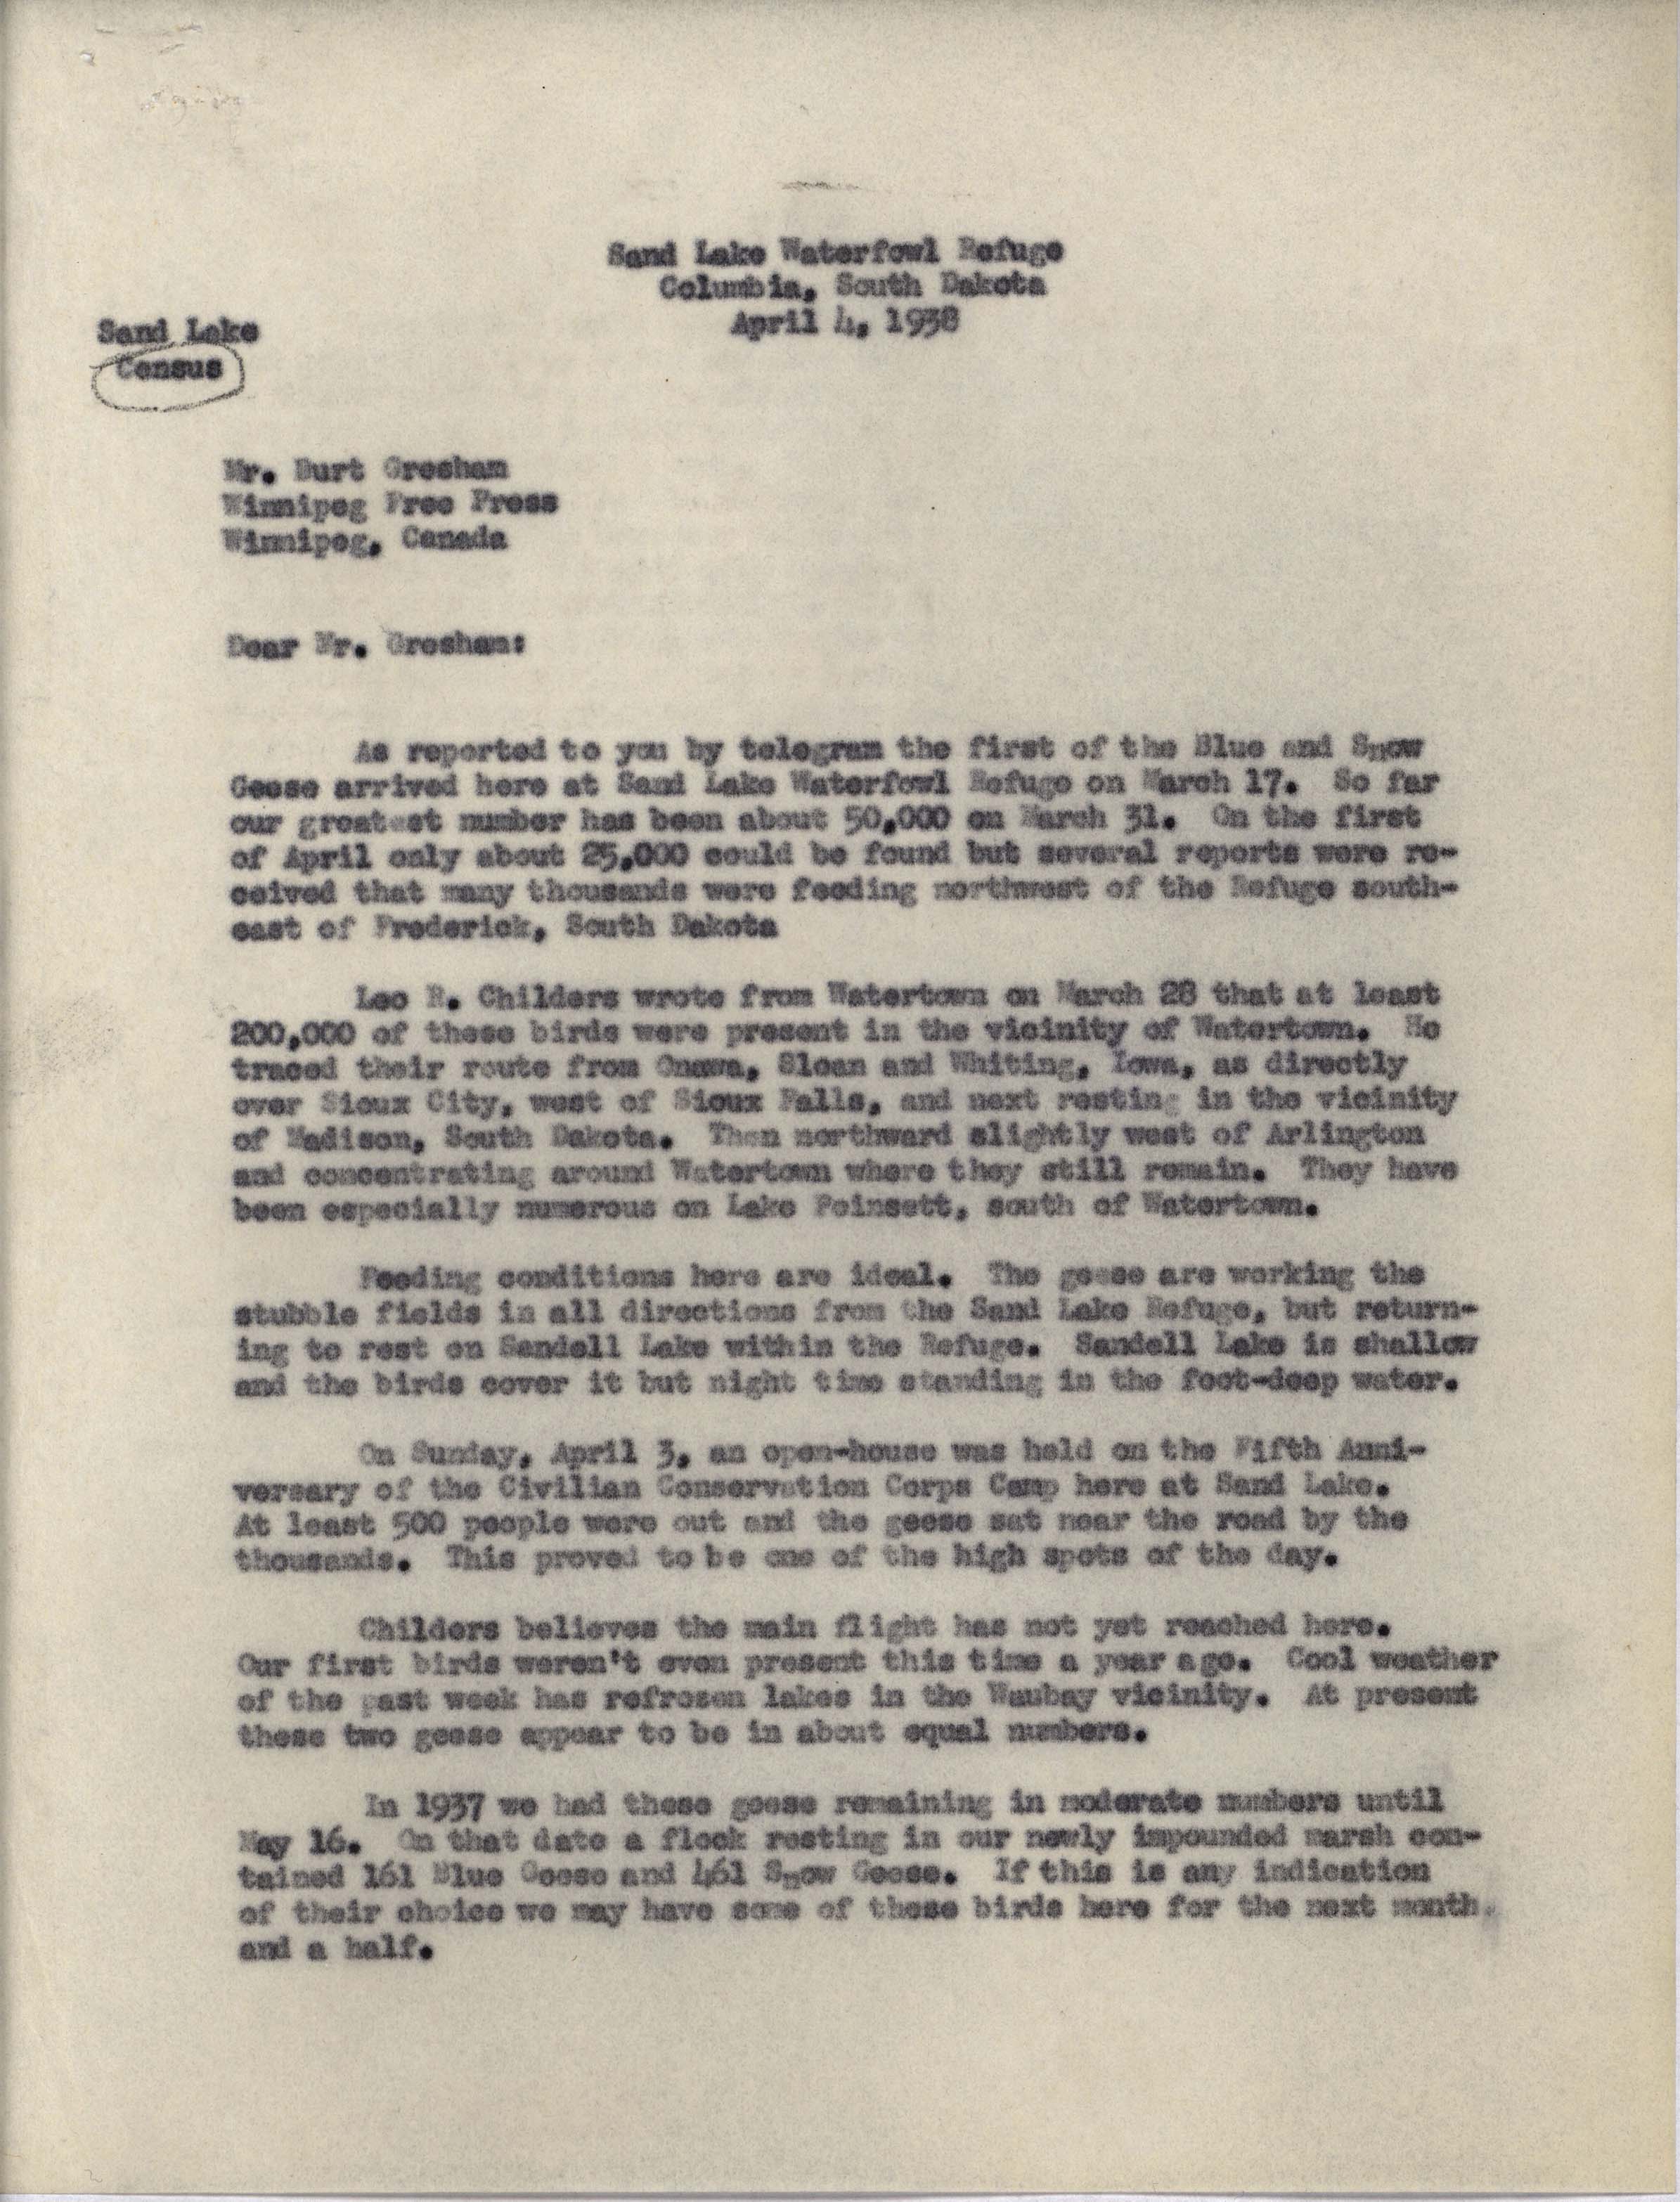 Philip DuMont letter to Burt Gresham regarding Goose migration, April 4, 1938